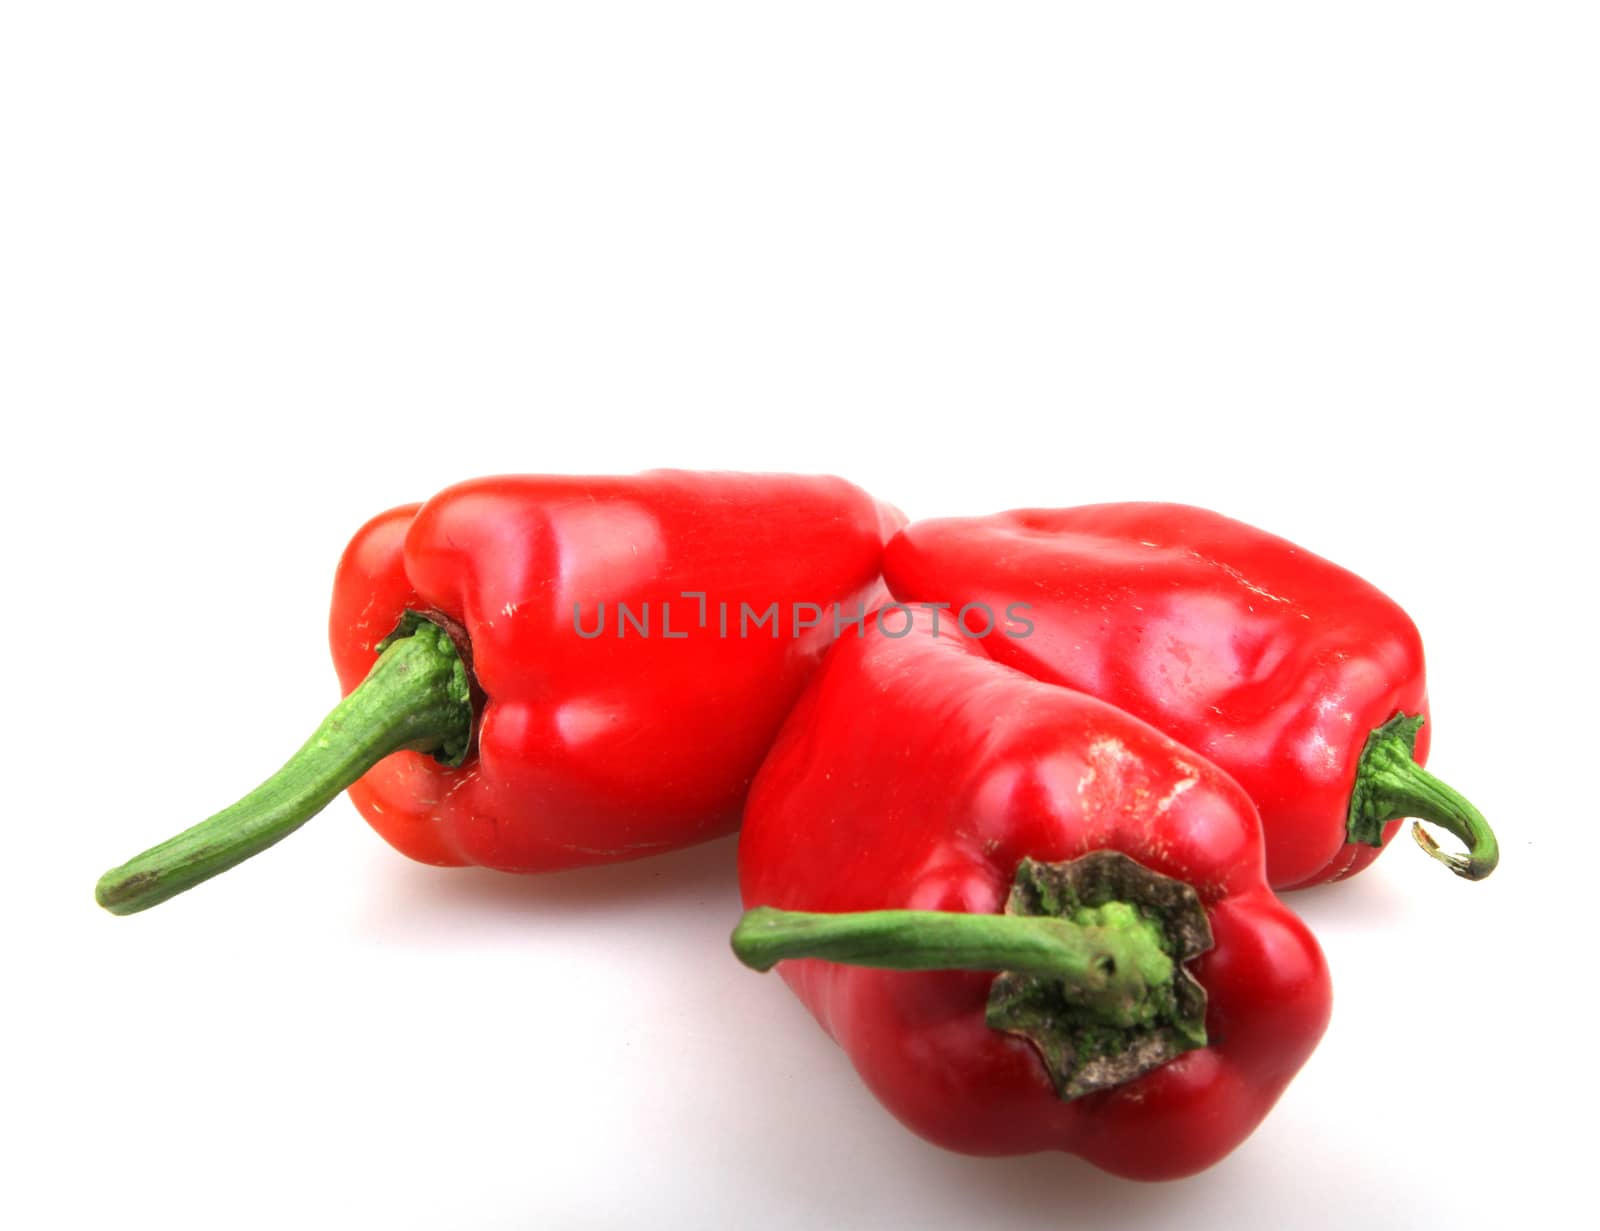 red pepper by nenov